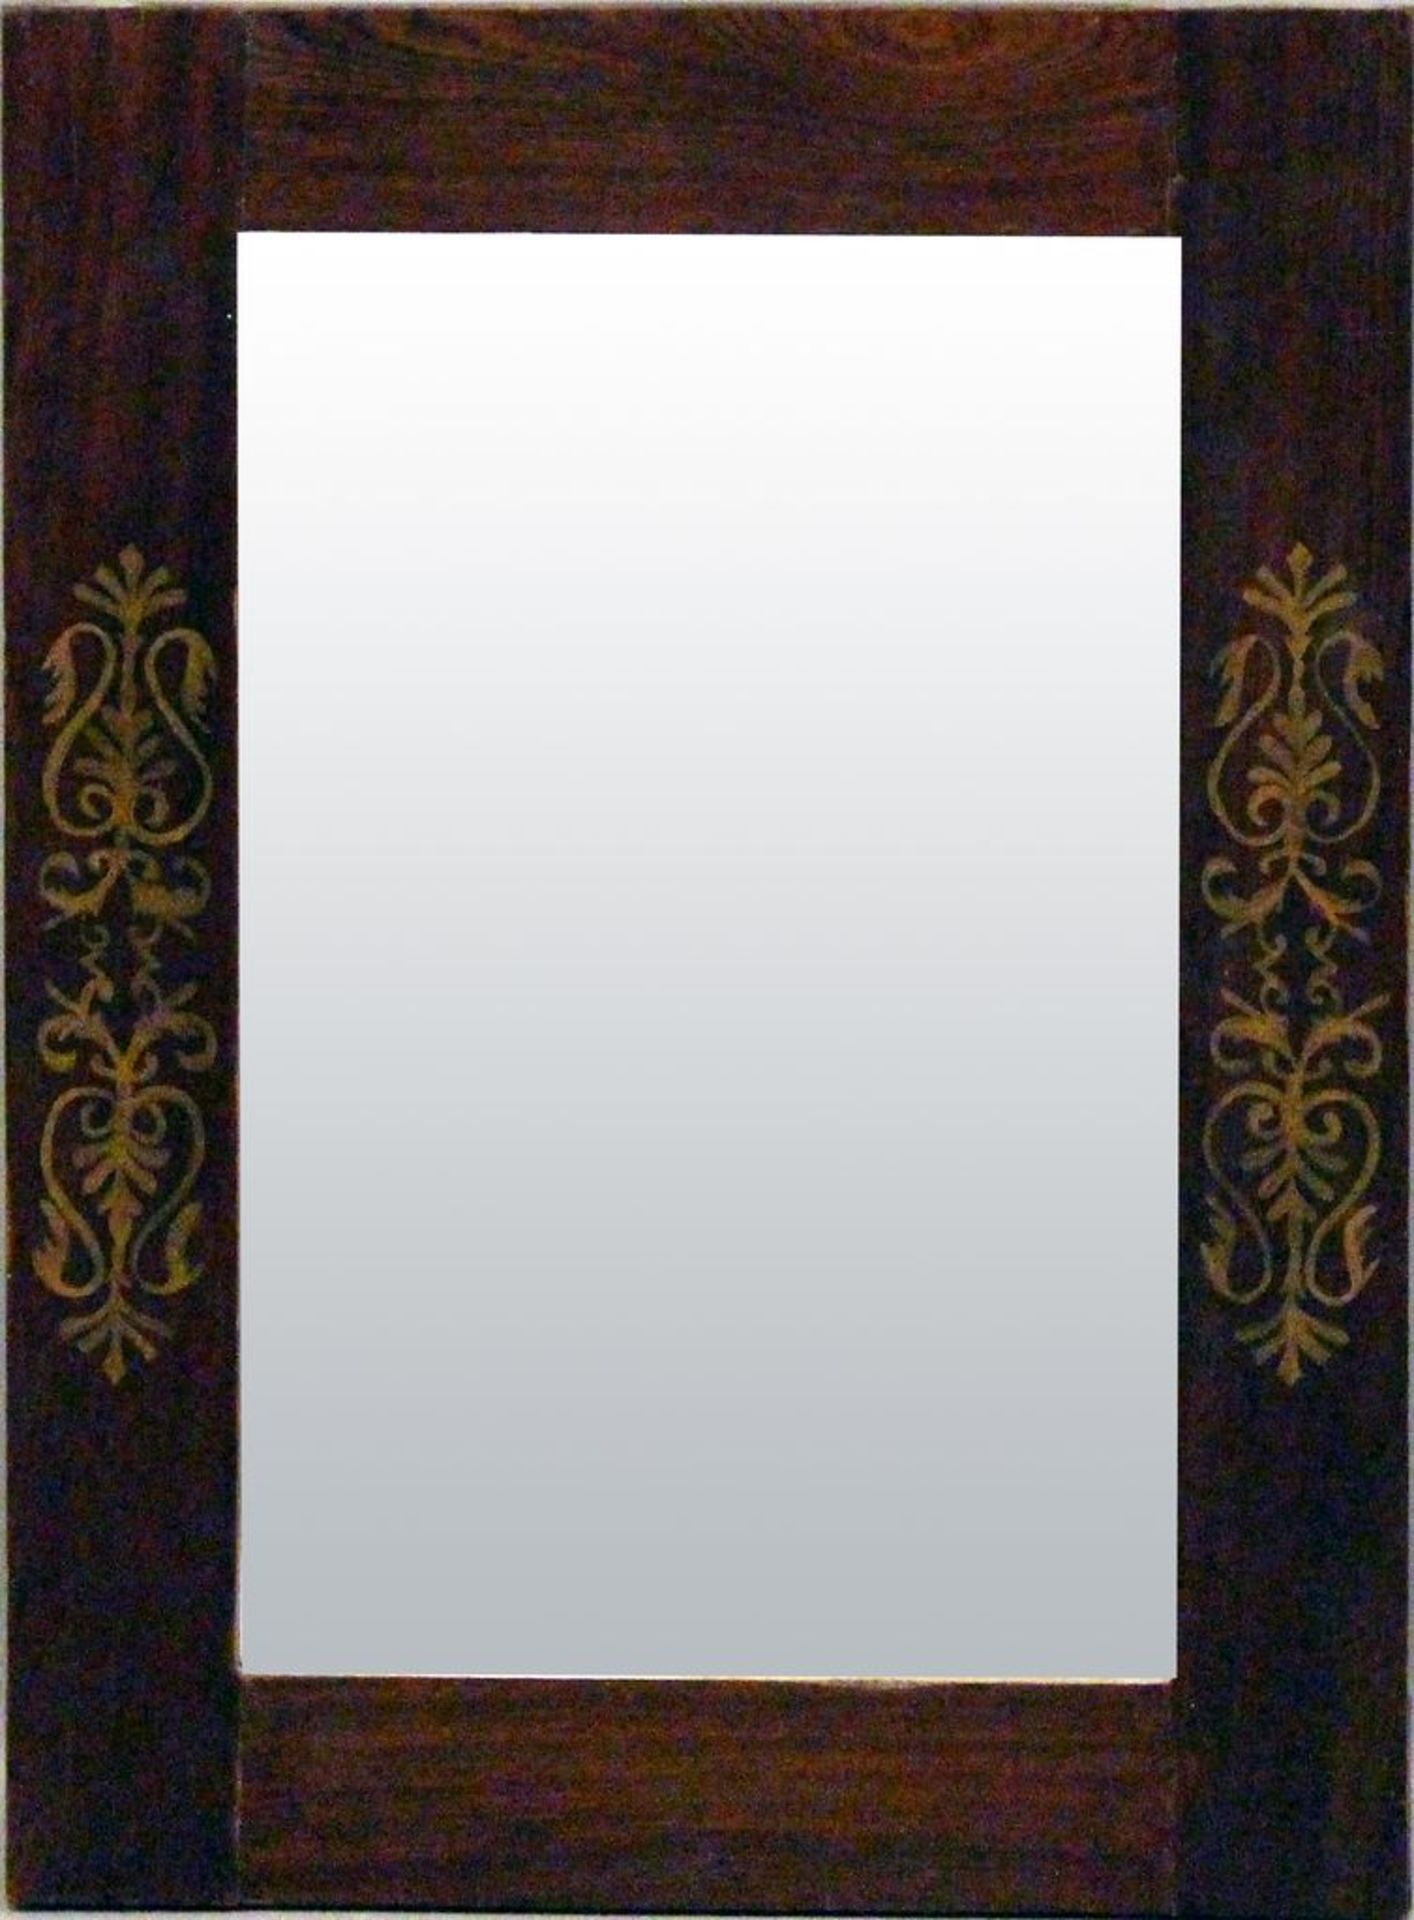 Spiegel (20. Jh.). Buche, gebeizt. Aufgemalte Ornamente. Altes Spiegelglas. 45,5x 62 c